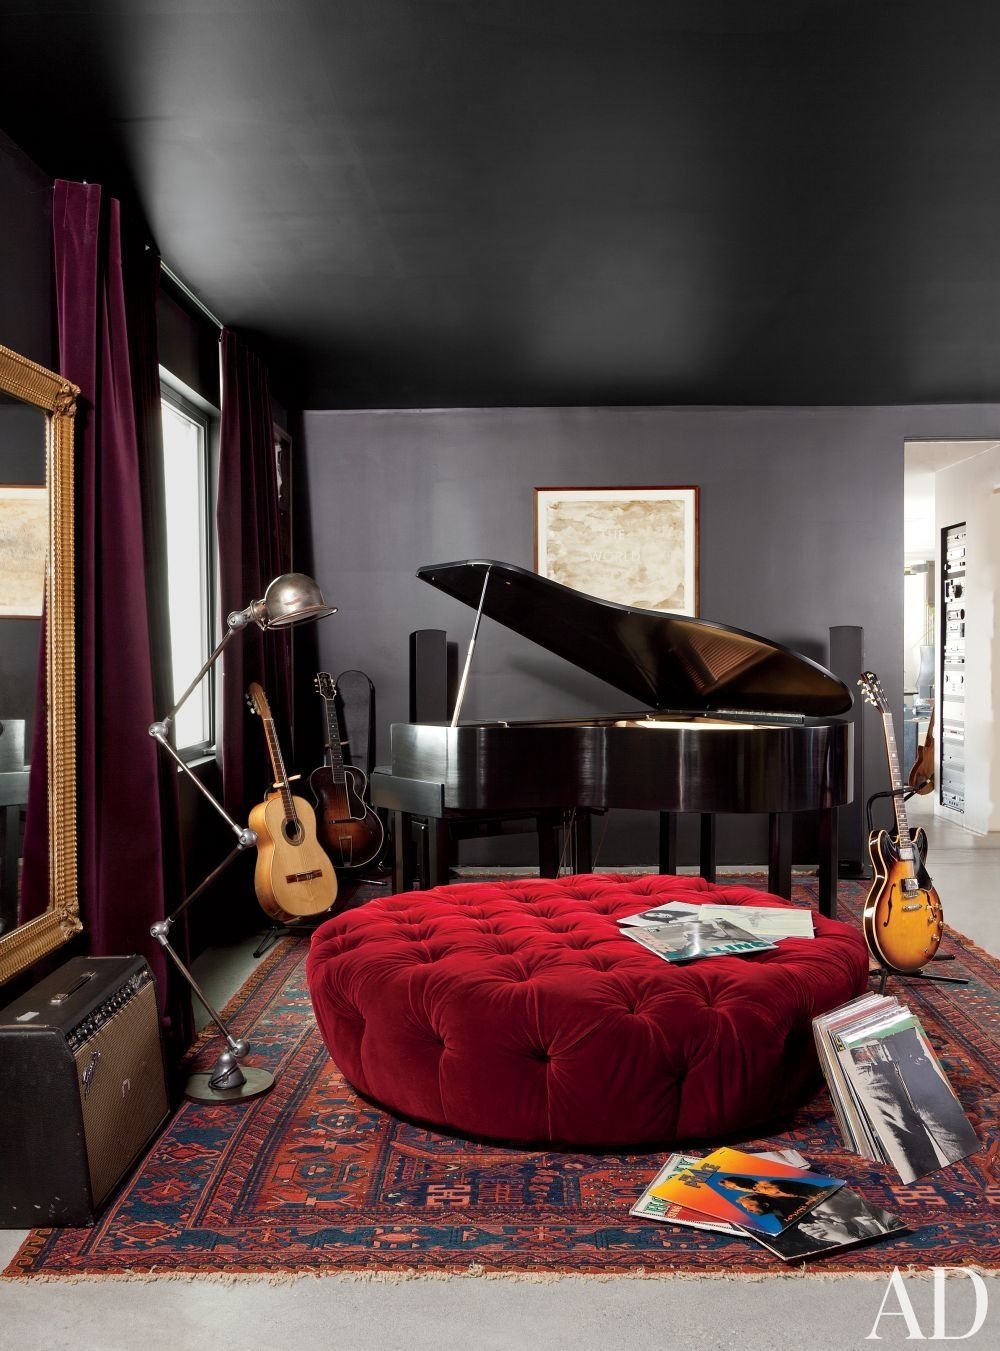 Bedroom music. Квартира Ленни Кравица в Париже. Комната музыканта. Квартира в стиле рок. Интерьер музыканта.